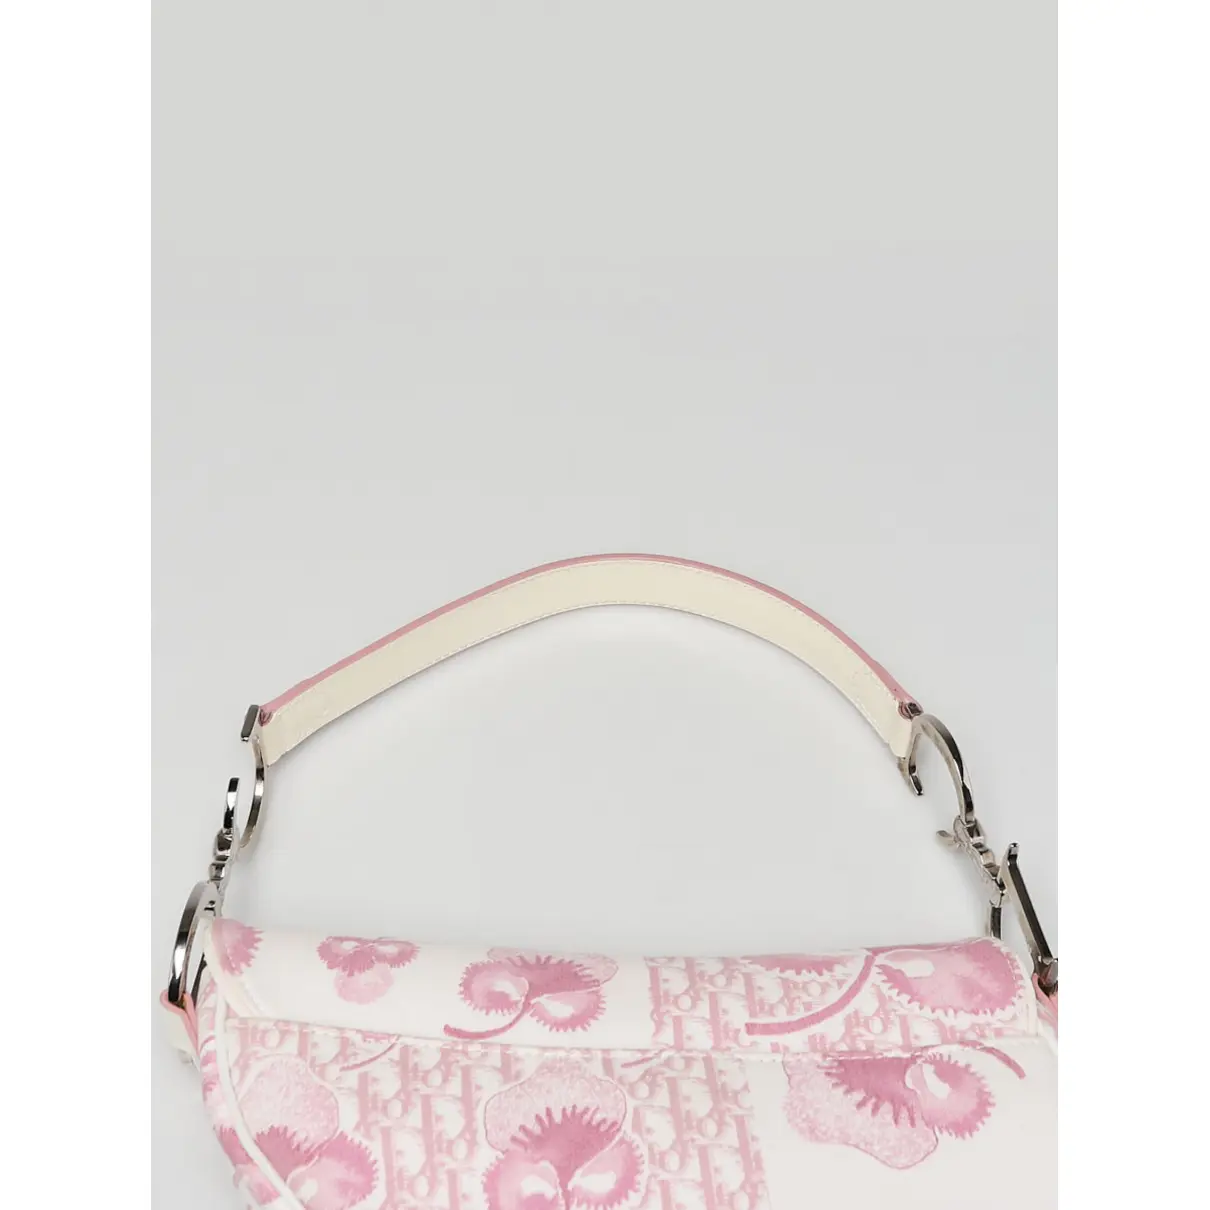 Buy Dior Saddle handbag online